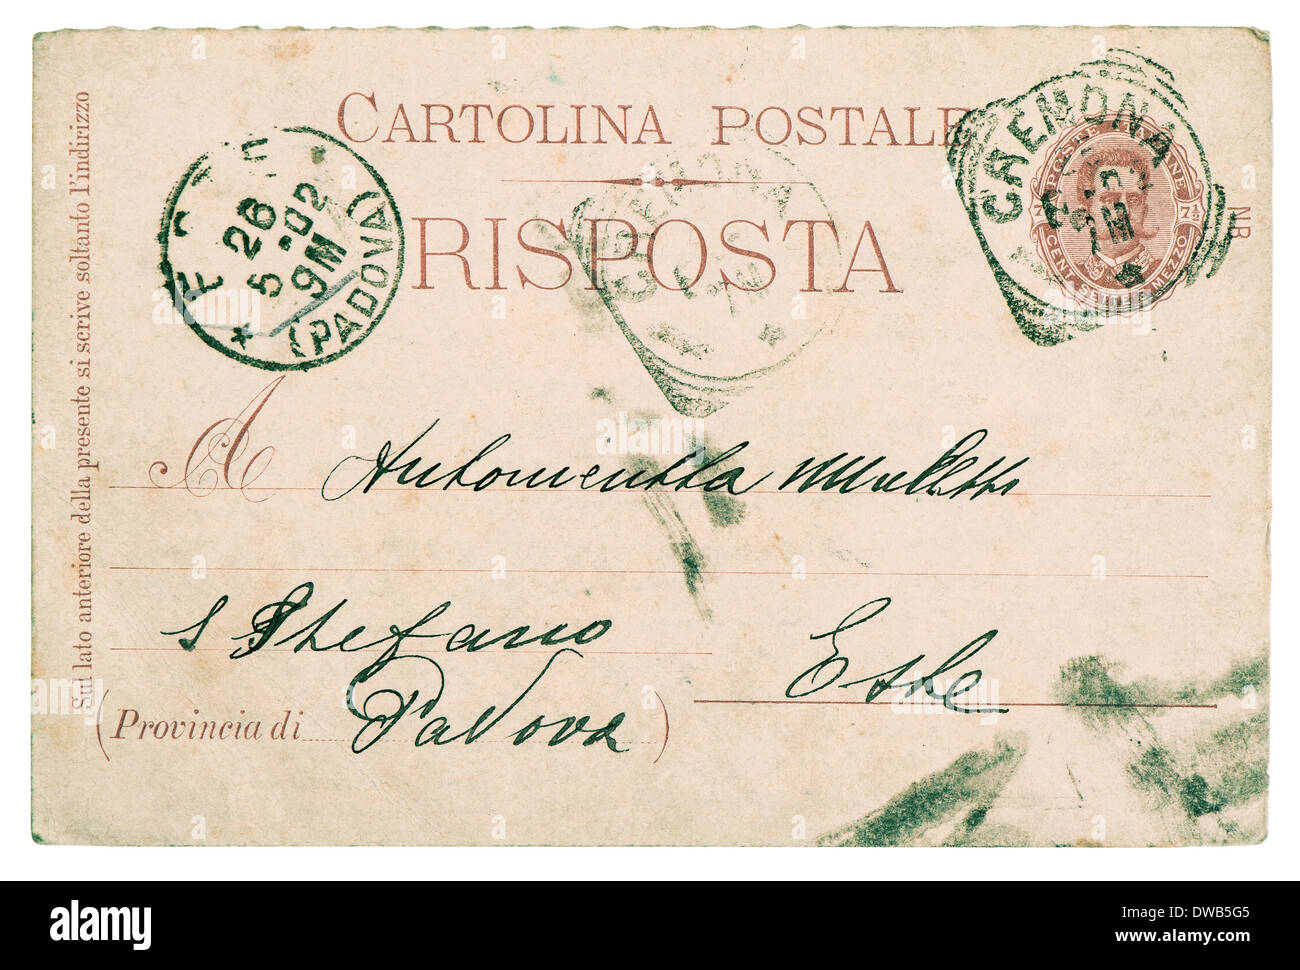 Carte postale. vieille lettre manuscrite avec italien typique au temps des timbres et des textures de papier Banque D'Images